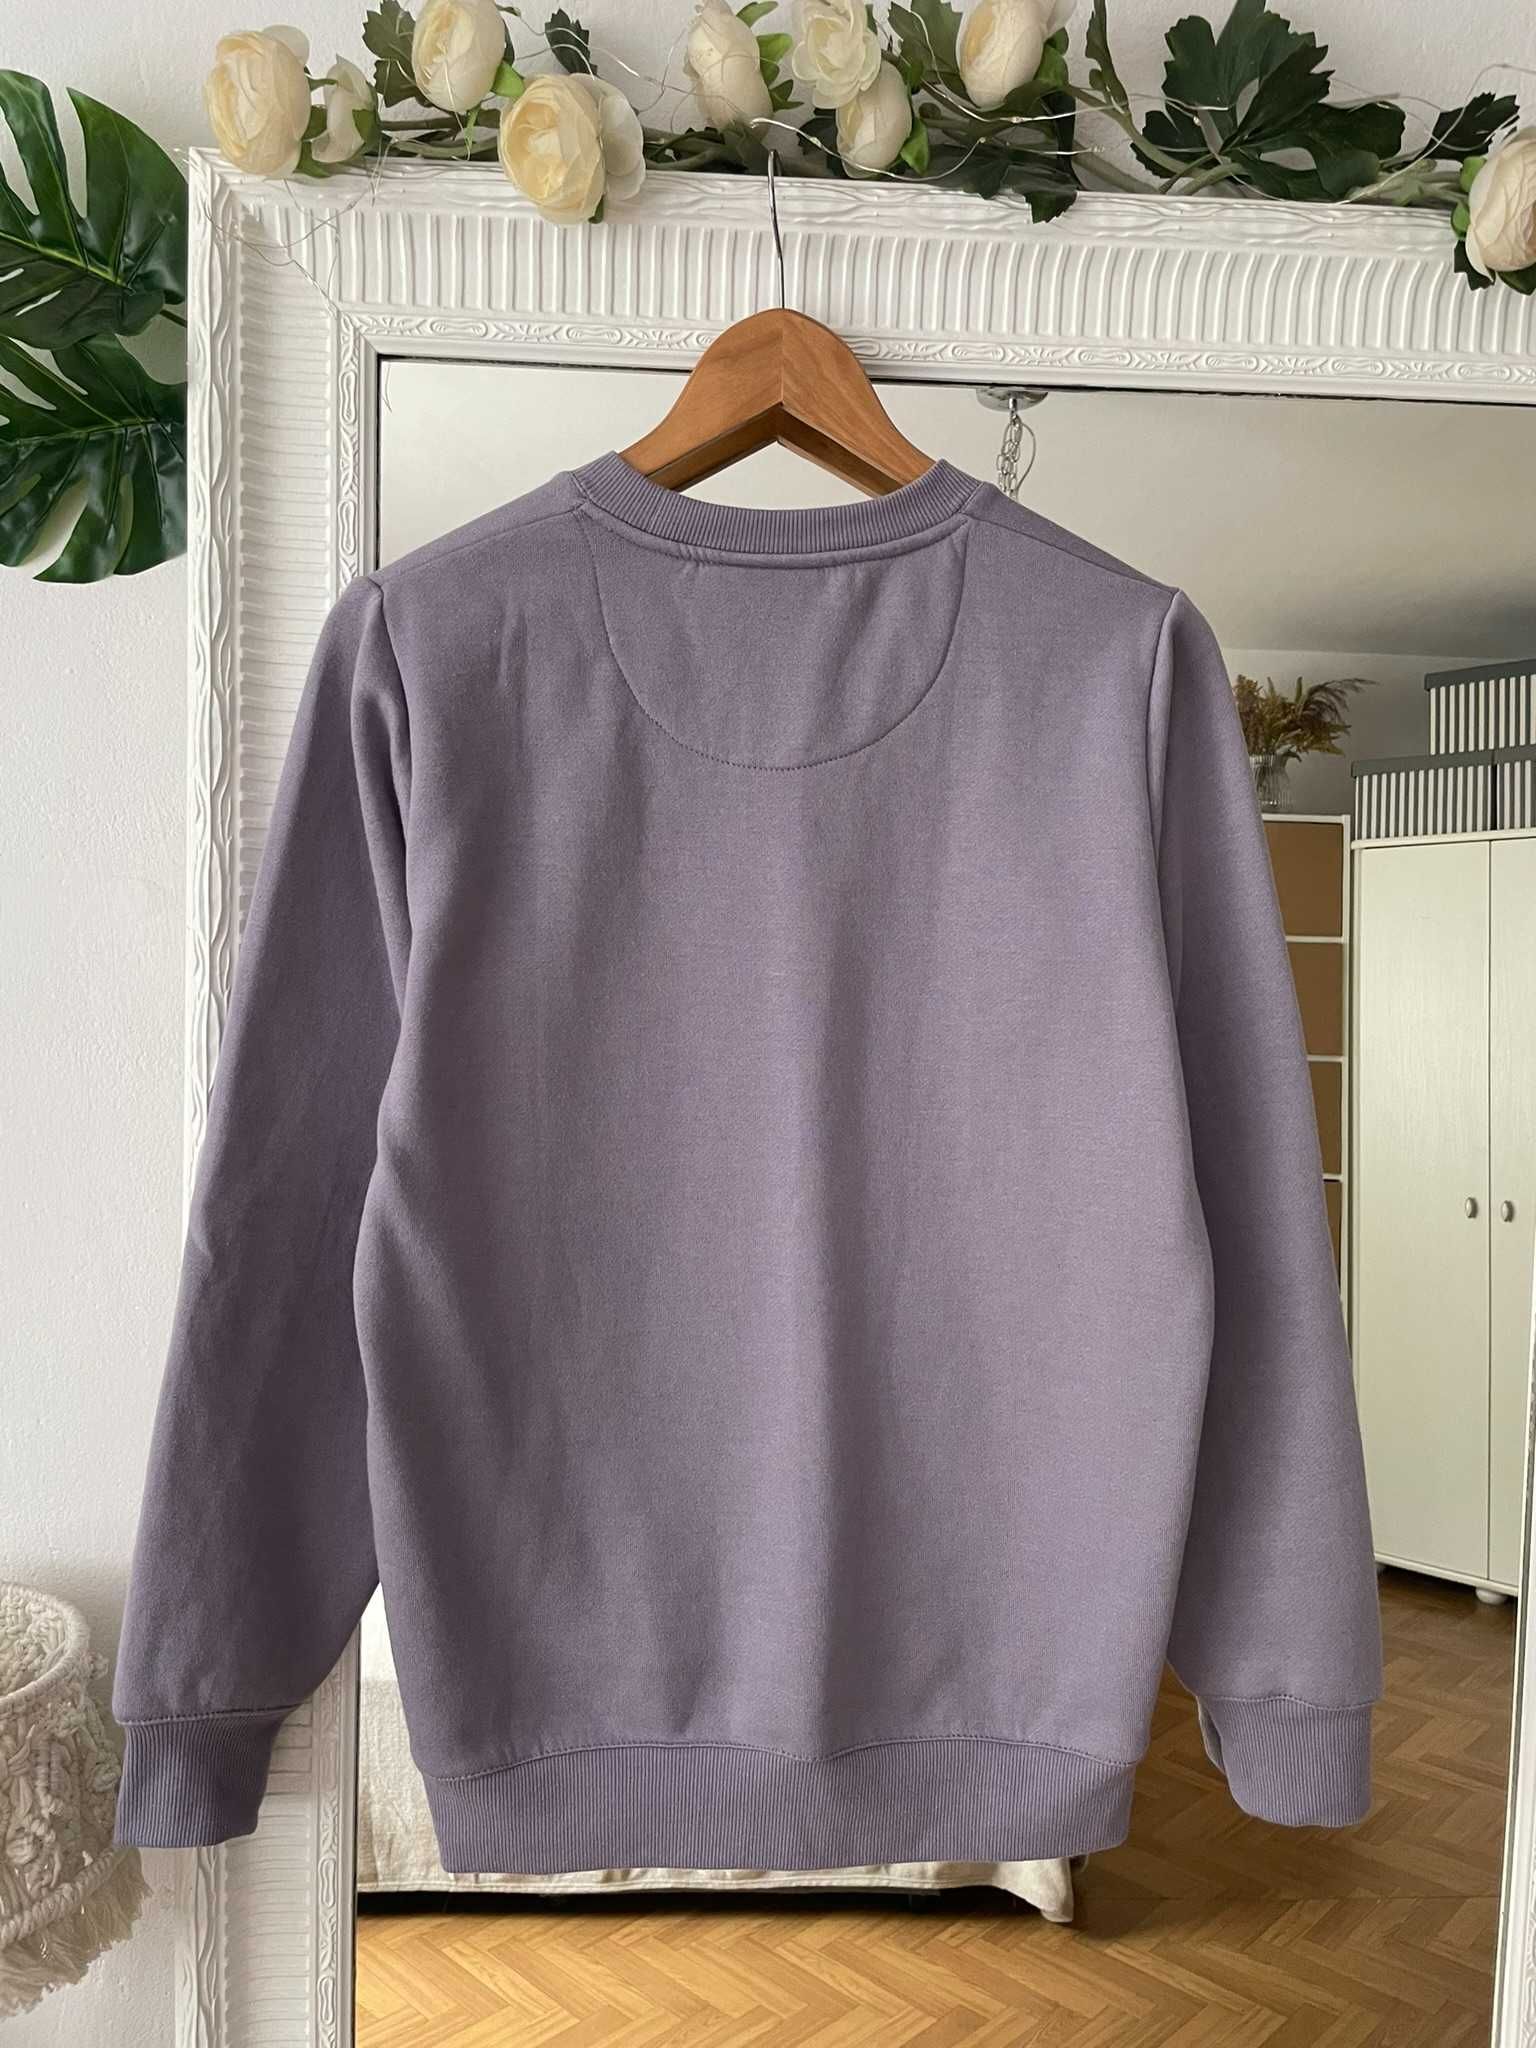 Smog bluza wrzosowa fioletowa liliowa długa XS 34